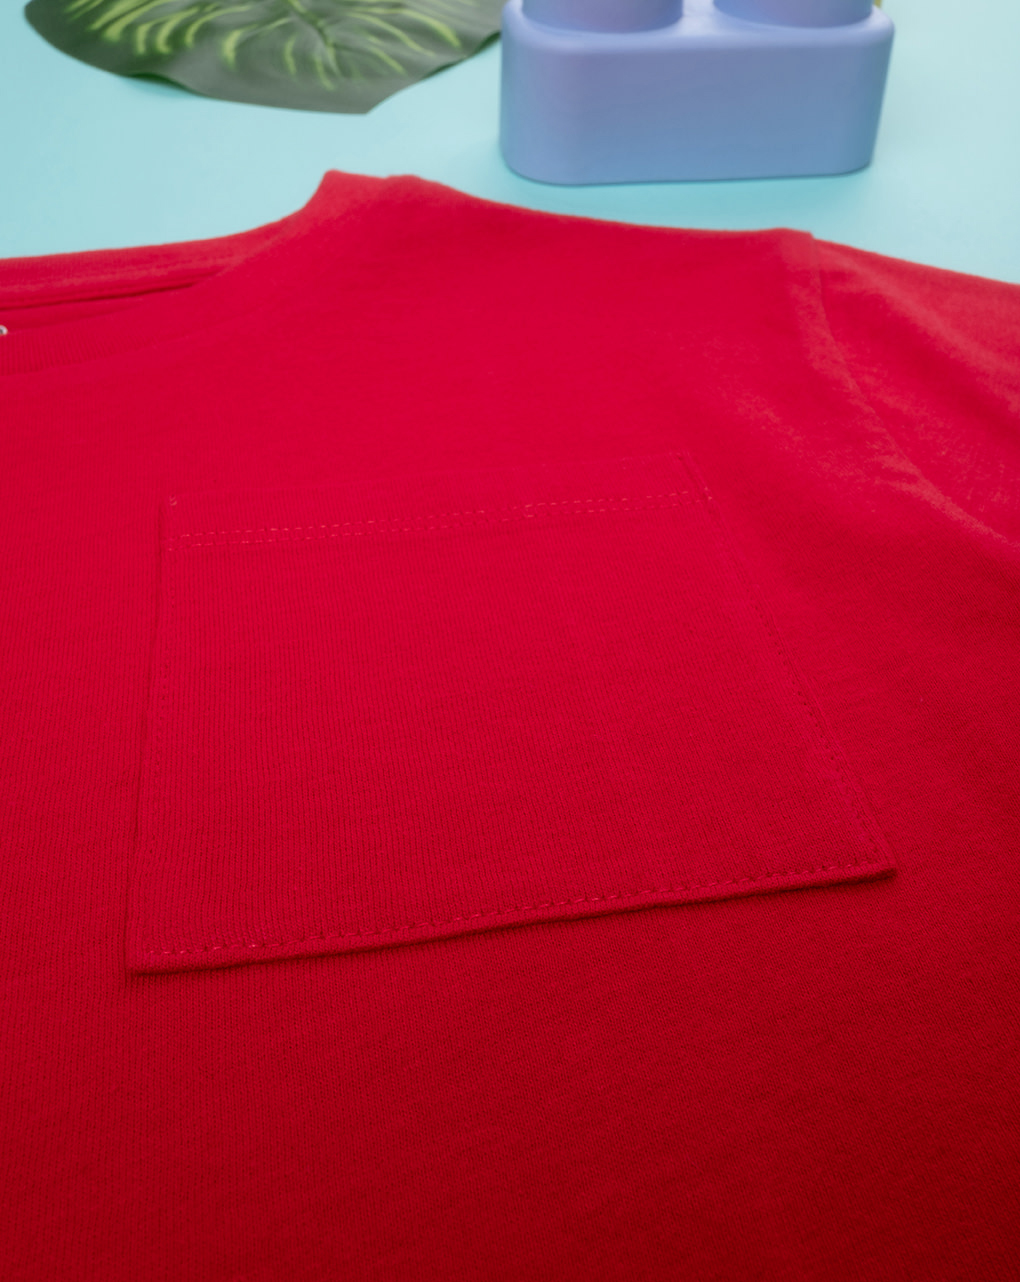 παιδικό t-shirt κόκκινο με τσέπη για αγόρι - Prénatal